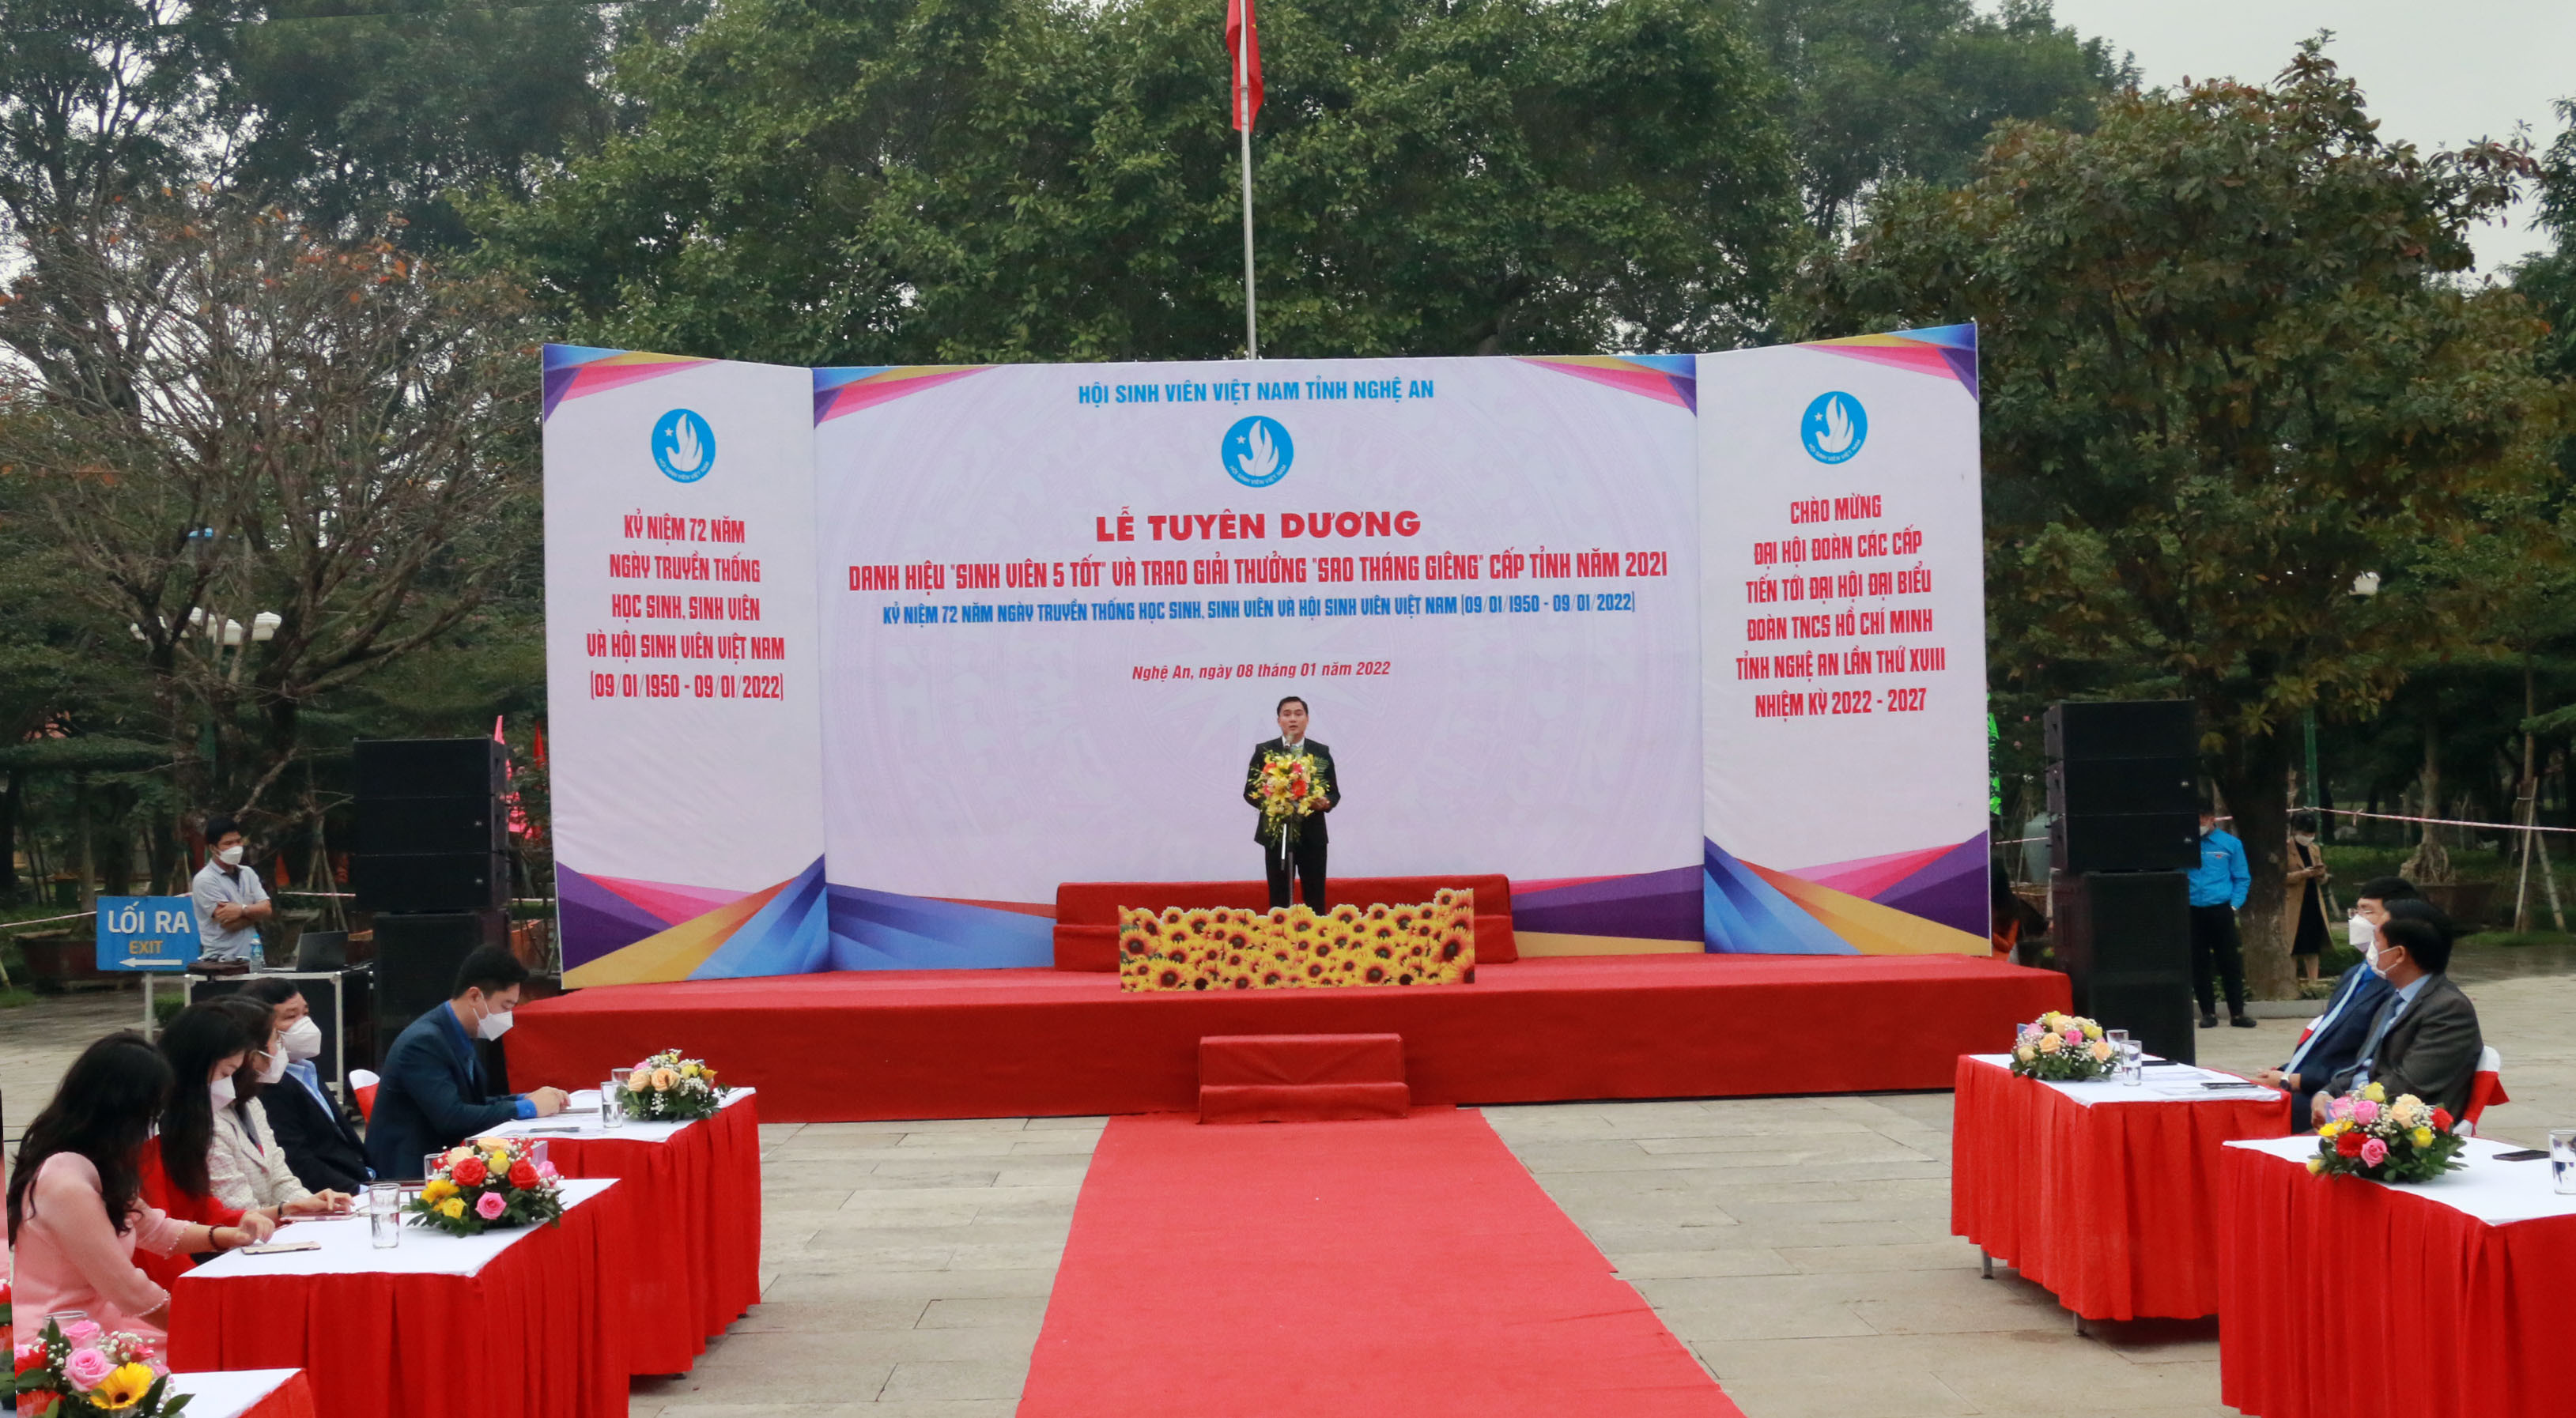 Chủ tịch Hội Sinh viên Việt Nam tỉnh Nghệ An Thái Minh Sỹ đọc diễn văn tại buổi lễ tuyên dương